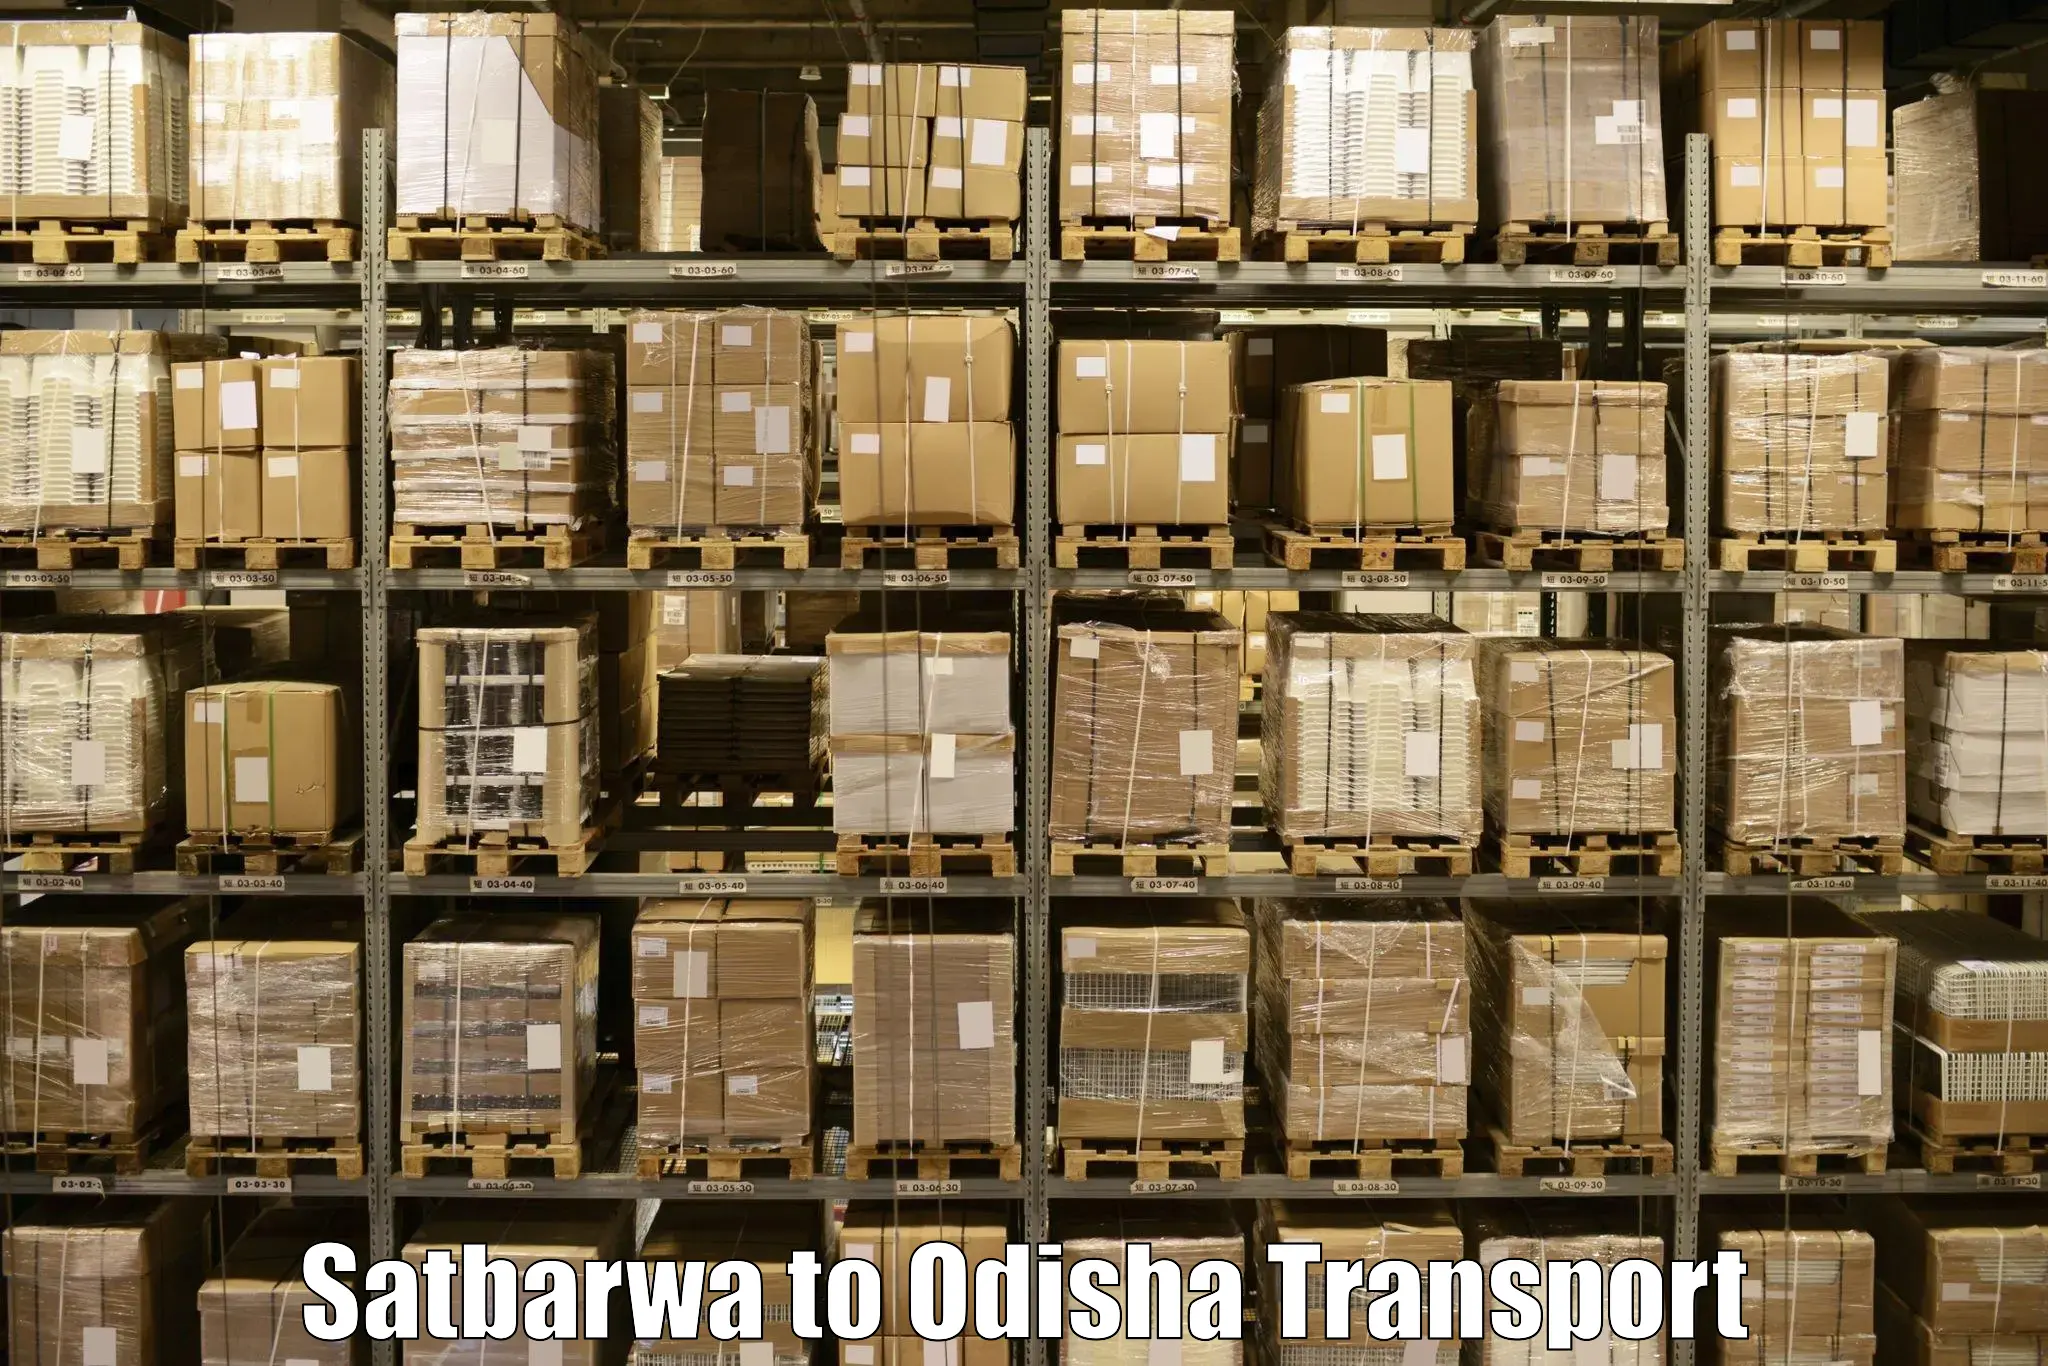 Air freight transport services Satbarwa to Jaipatna